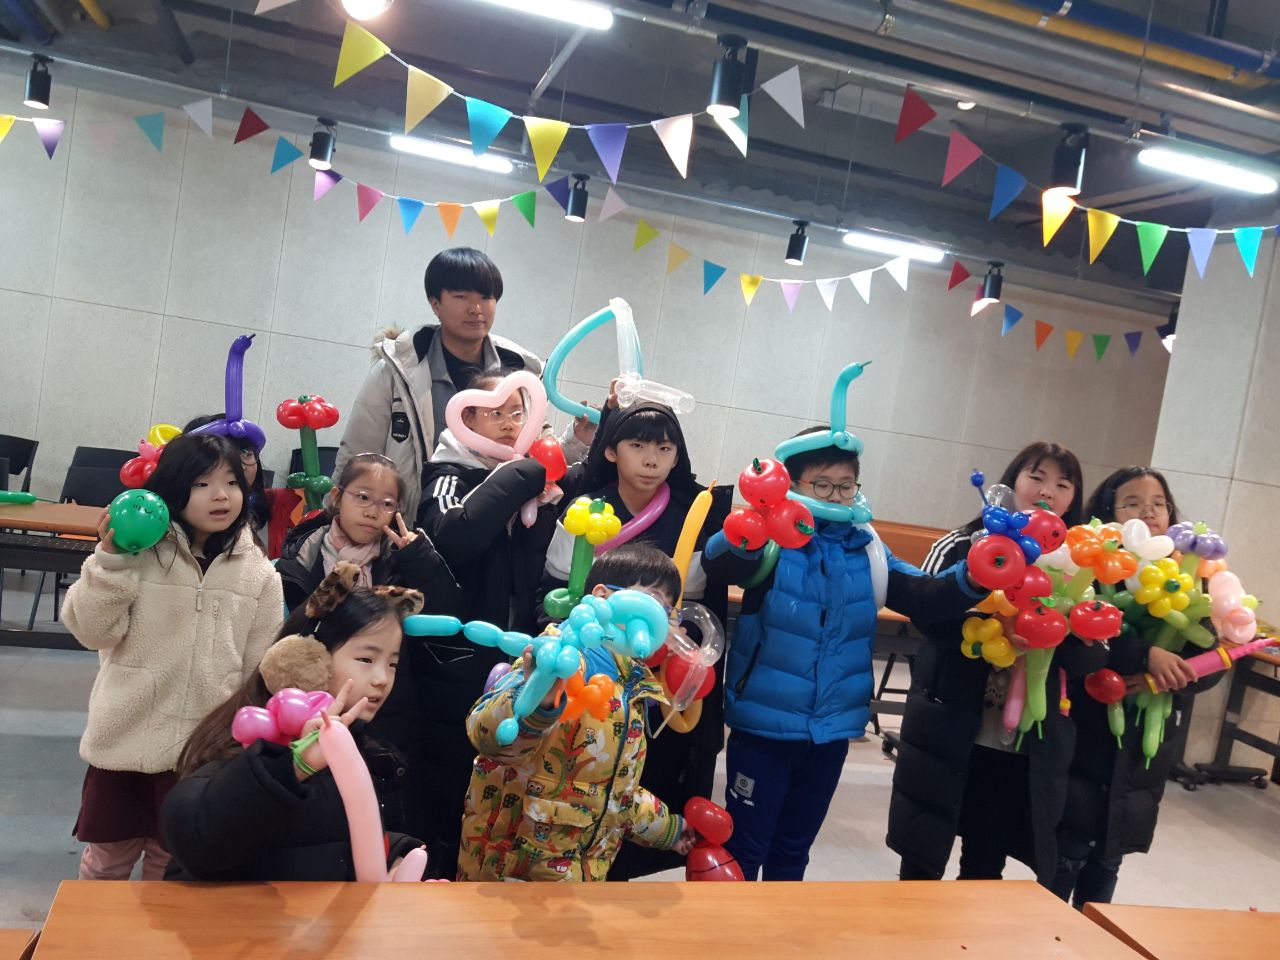 중곡3동 자치회관 겨울방학 권역별 특화프로그램 어린이와 함께하는 풍선아트 풍선.jpeg